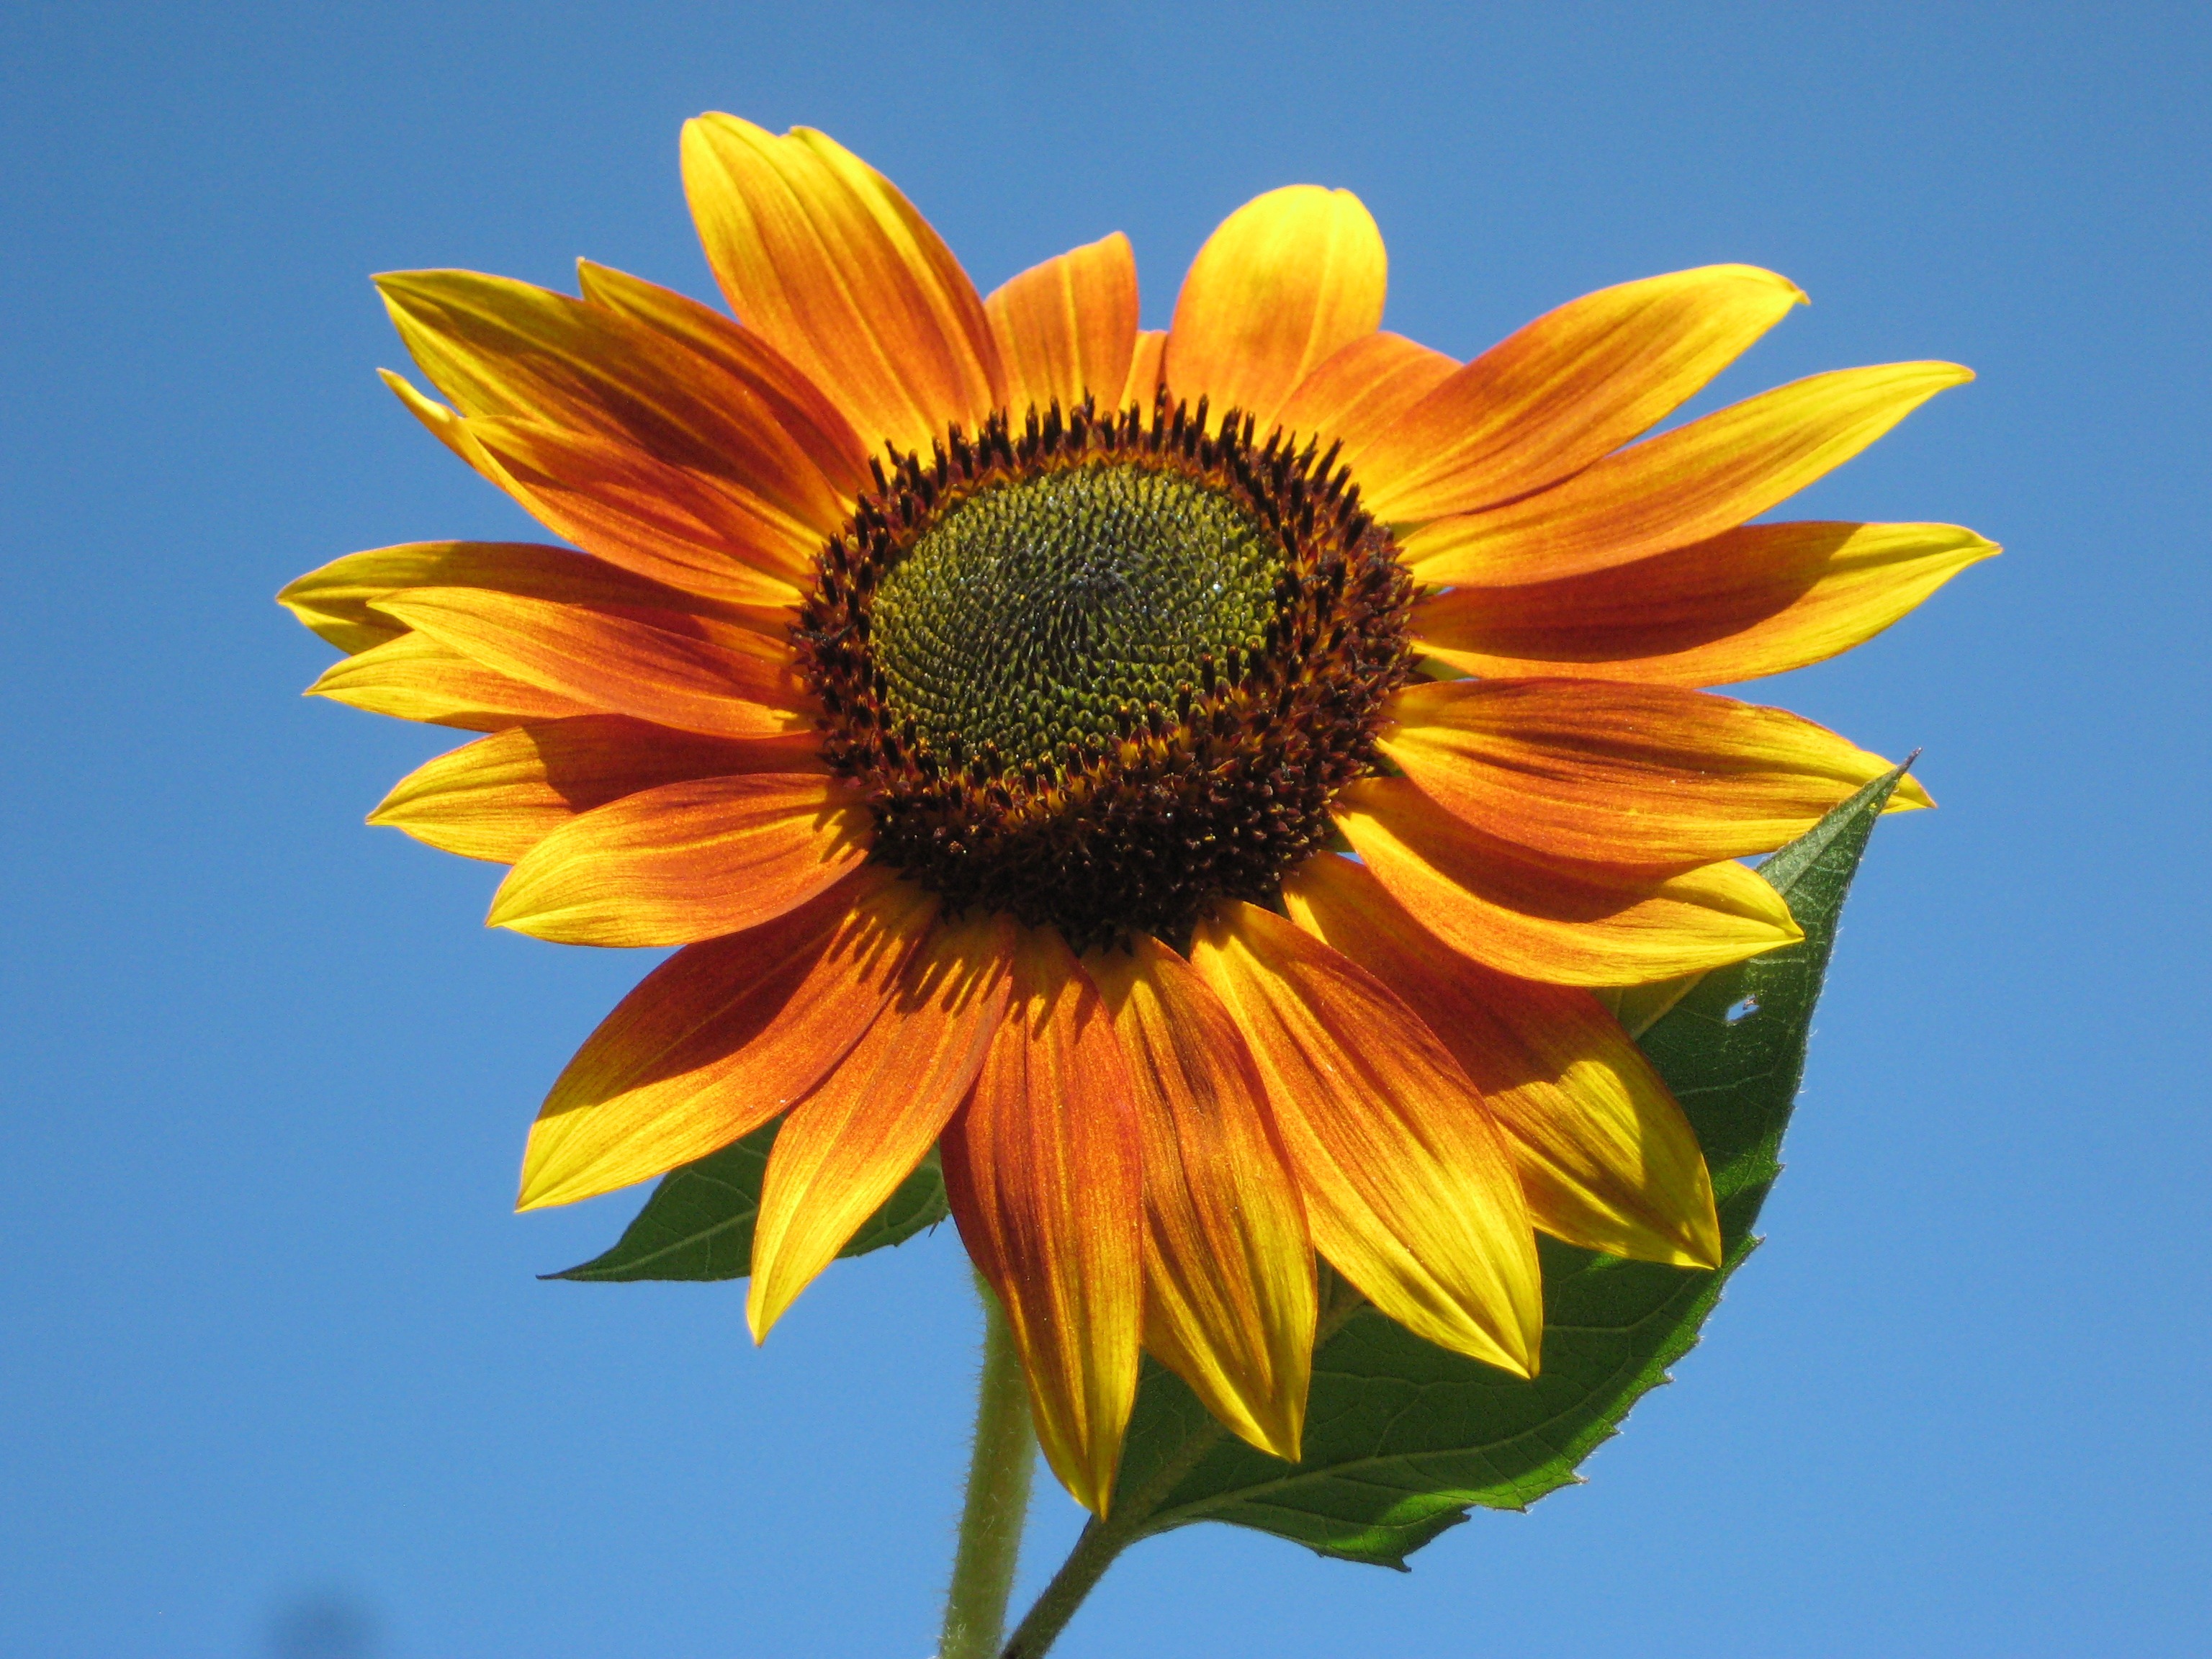 Sunflower flower in the sunlight